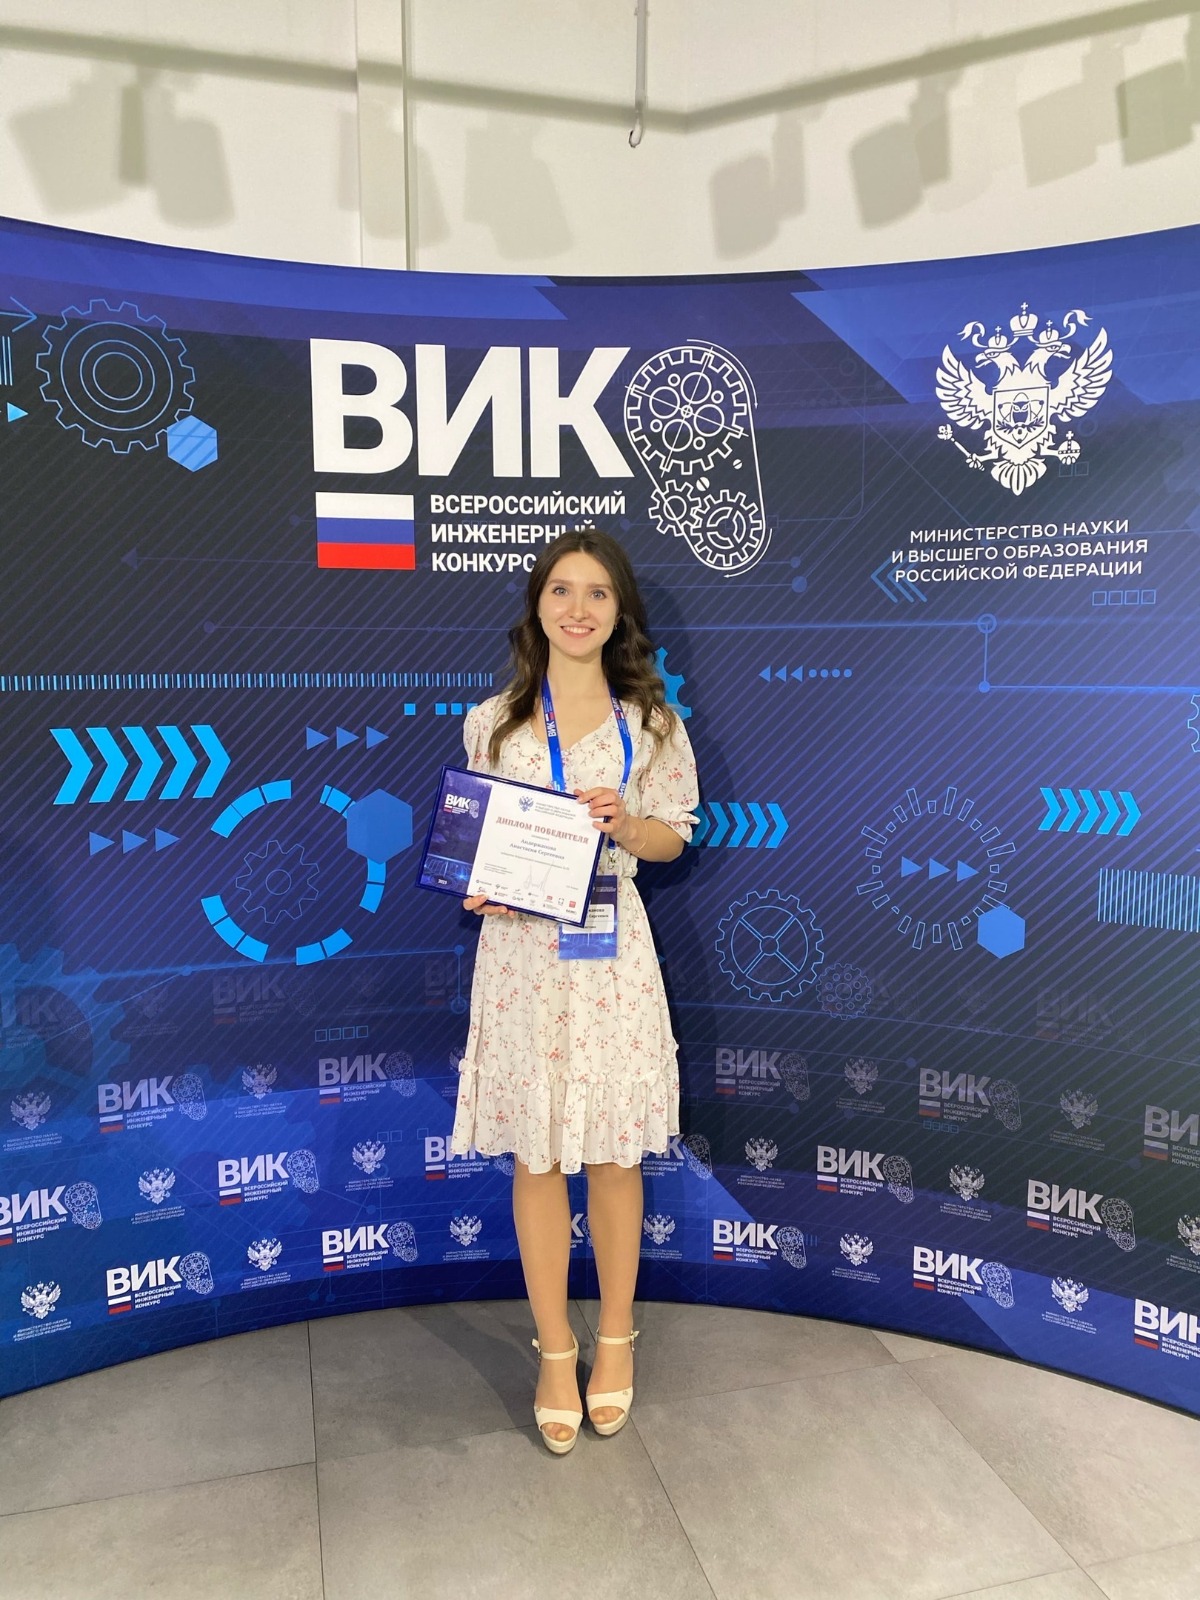 Ярославская студентка победила во Всероссийском инженерном конкурсе